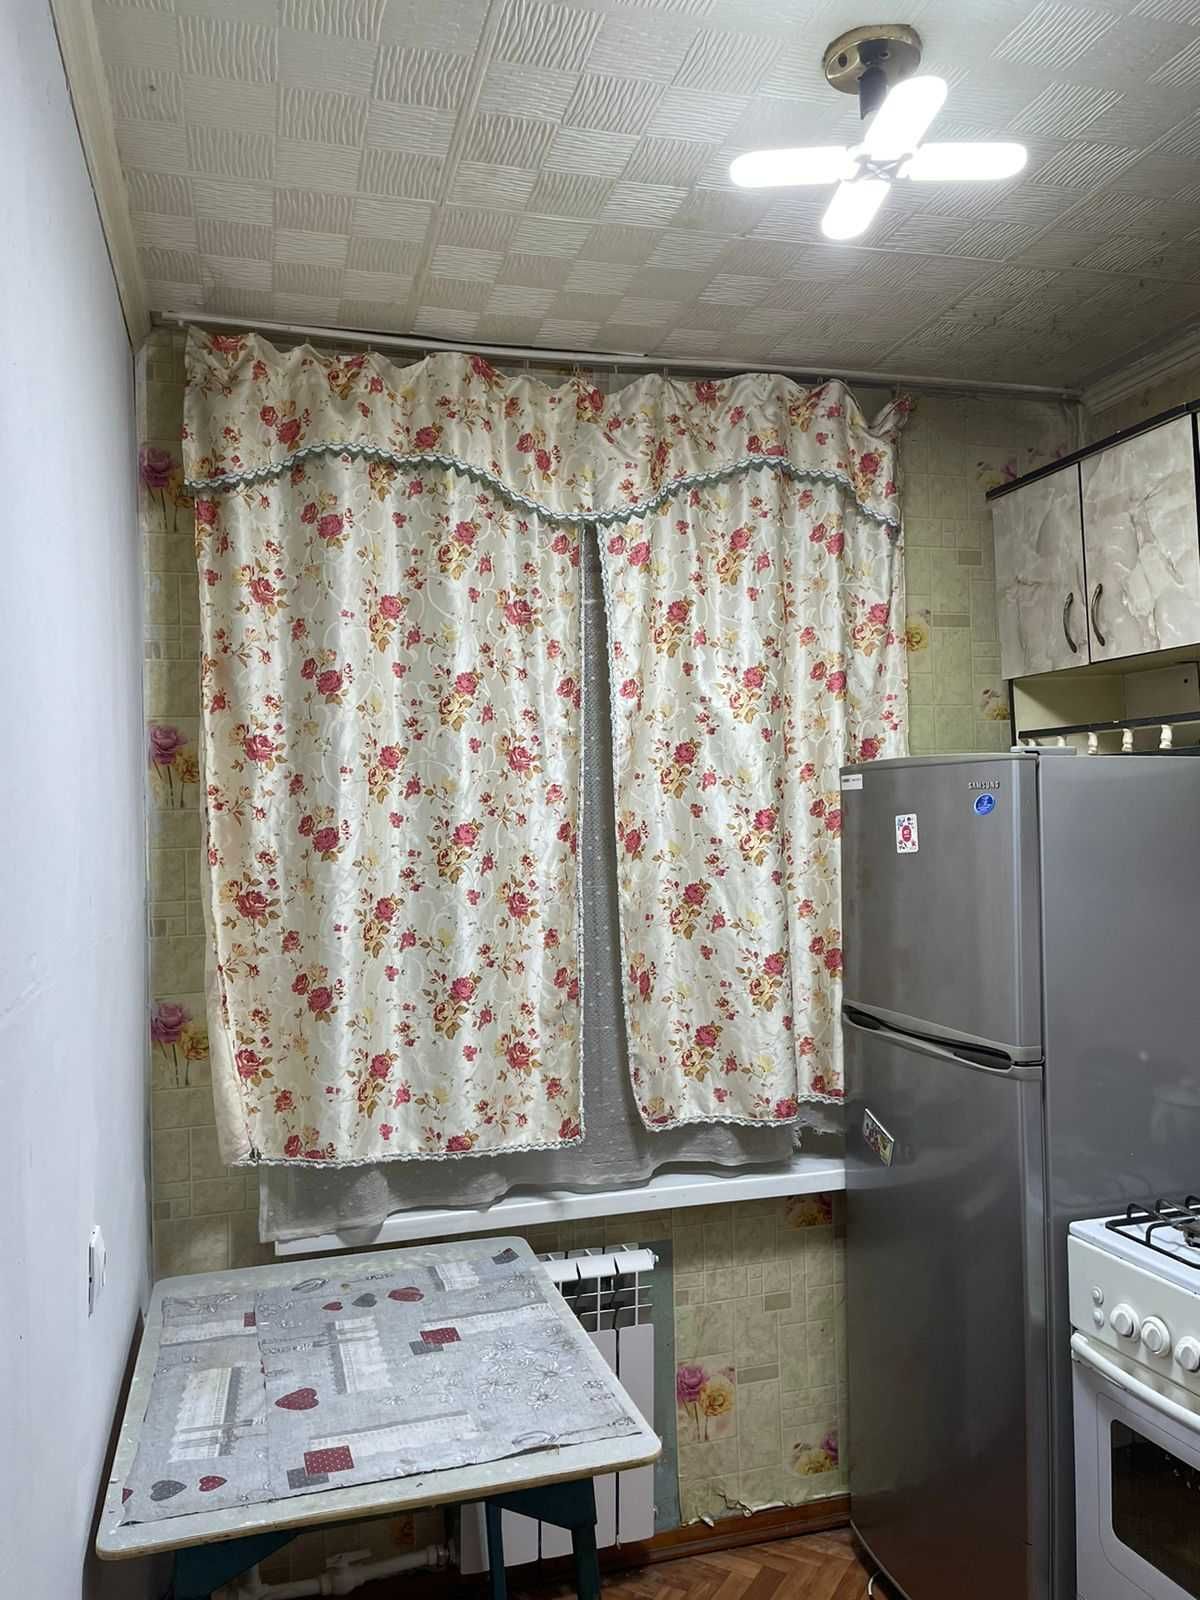 Продам МСО 1-комнатную квартиру после модернизации в 2019 году.